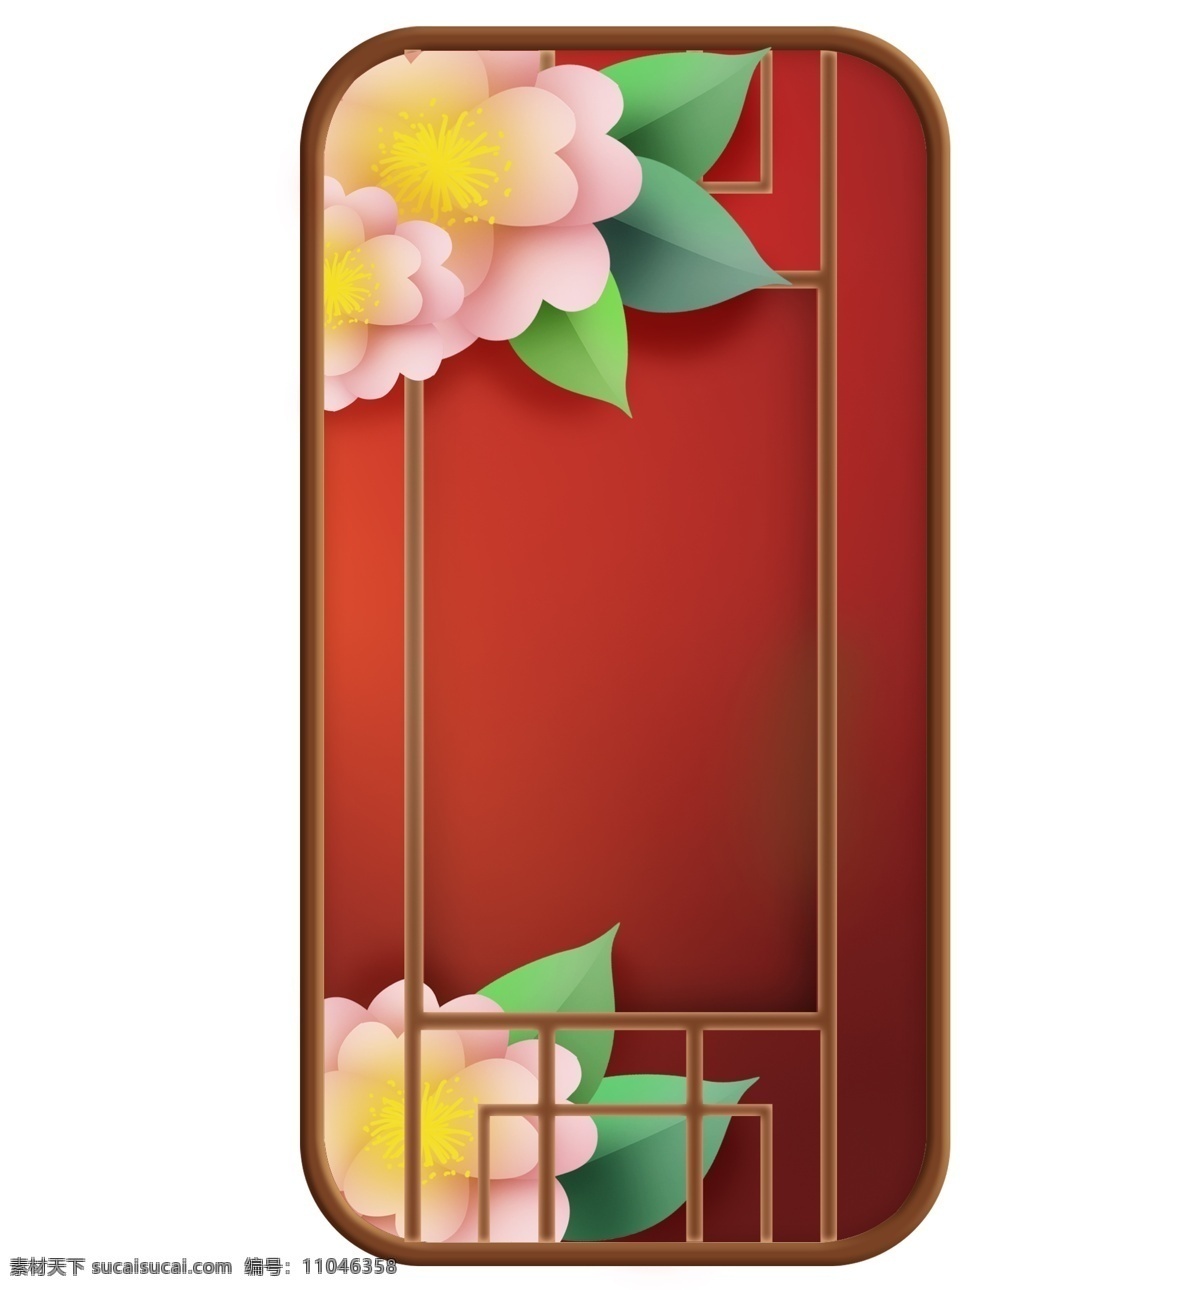 中国 风 红色 窗子 花朵 窗框 窗格 古风 婚庆 结婚装饰 窗外 春天 红色窗格 花卉 喜庆 中国风 春季